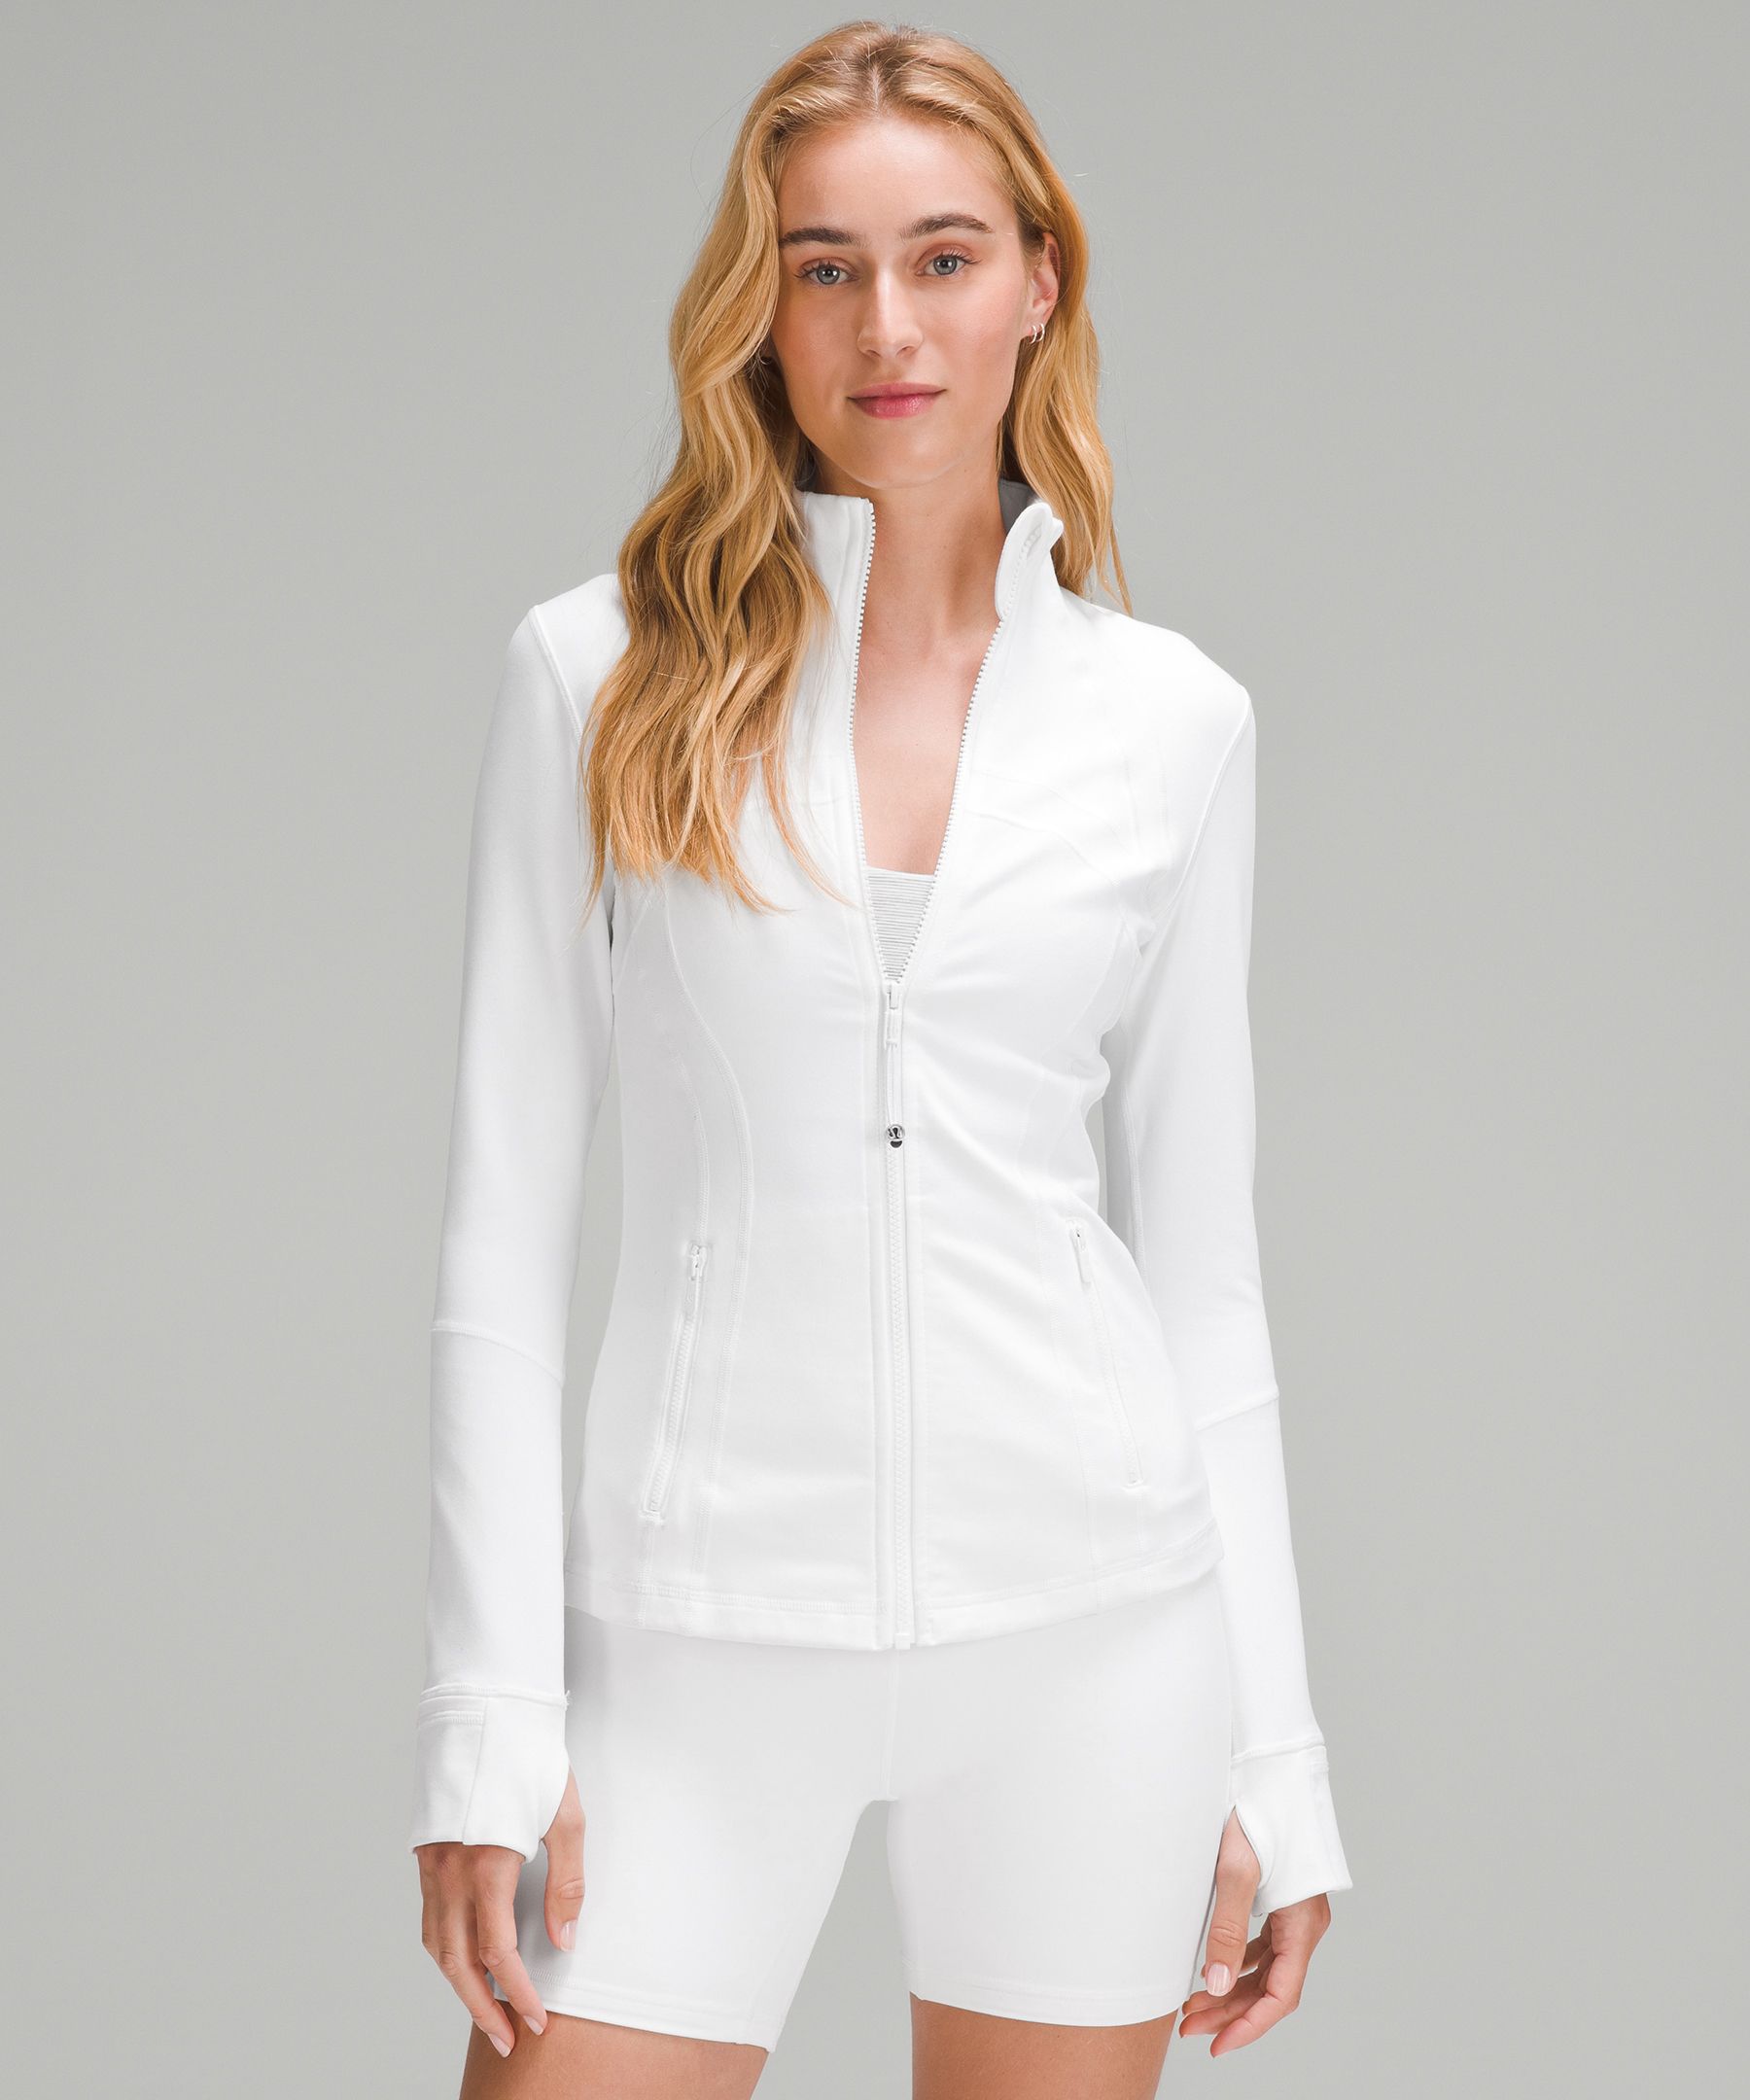 lululemon define jacket white